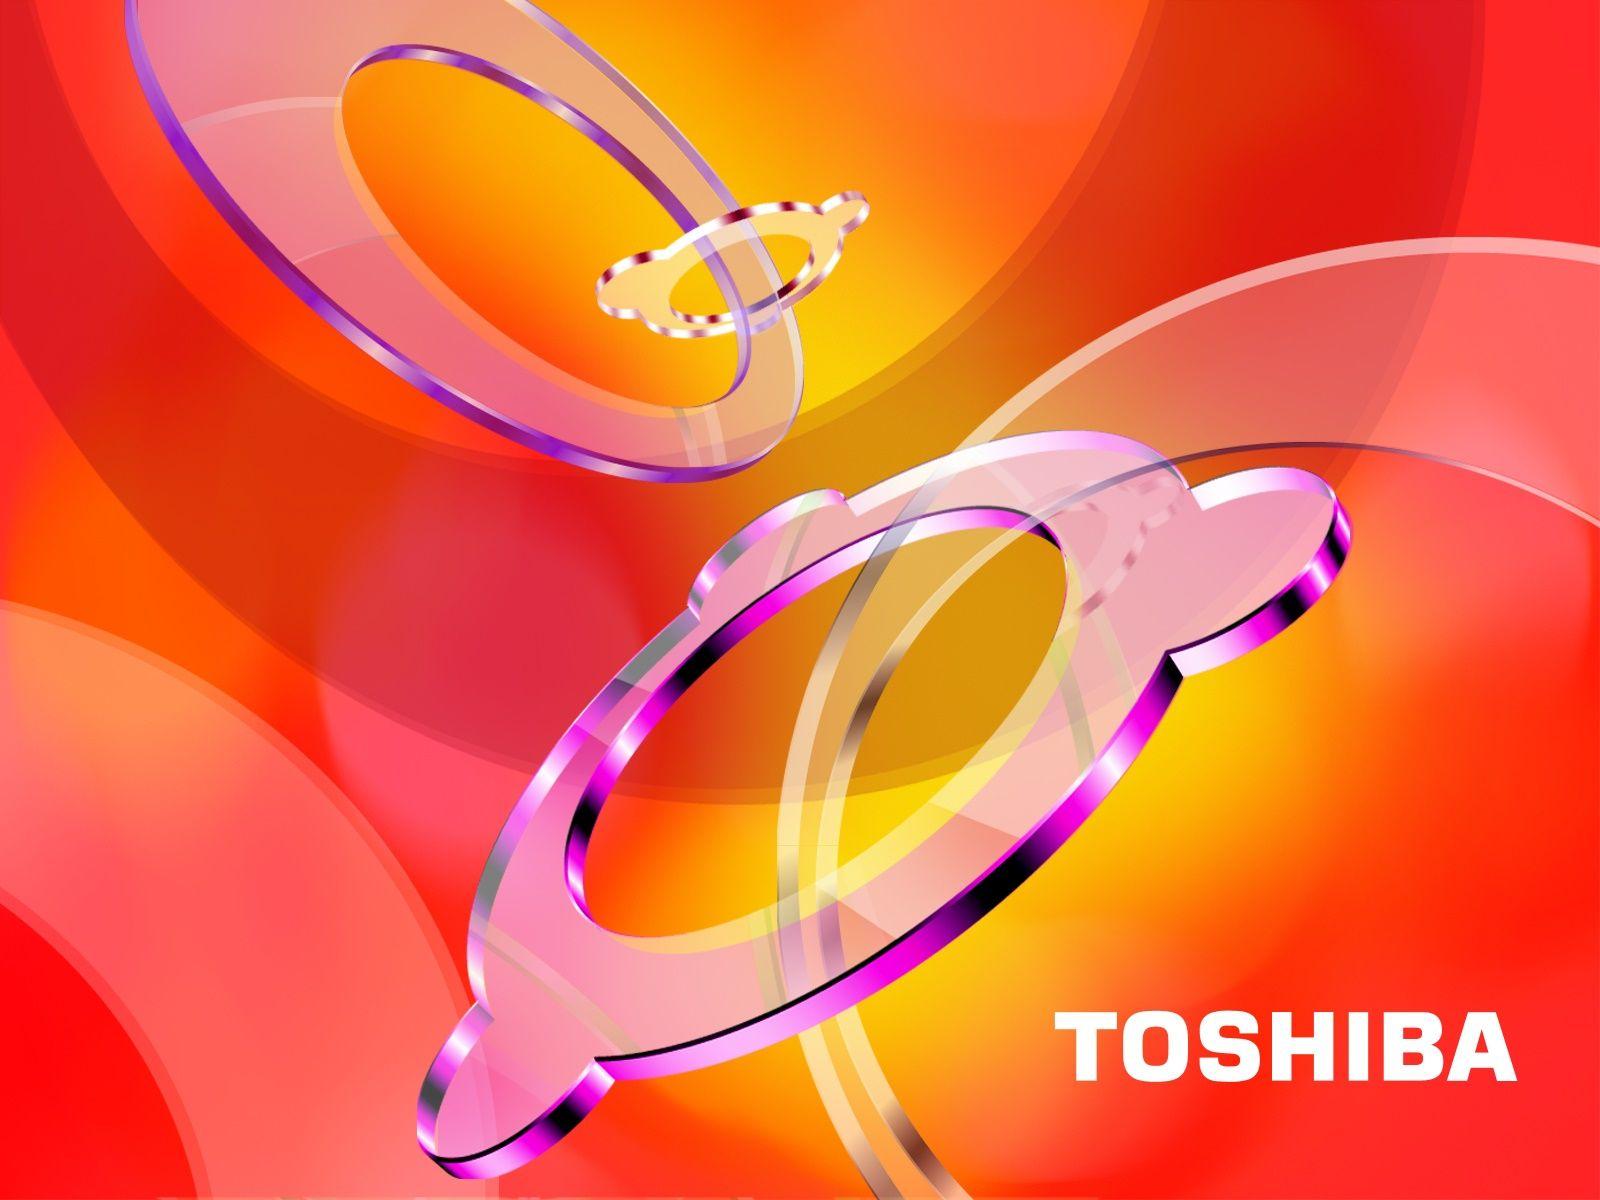 TOSHIBA Satellite wallpaper. TOSHIBA Satellite